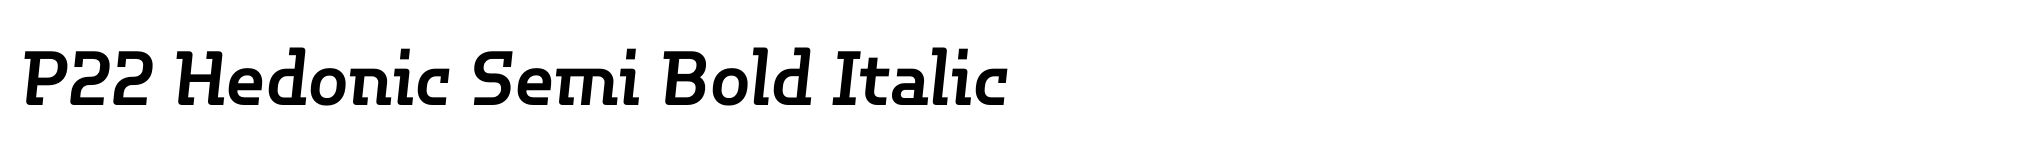 P22 Hedonic Semi Bold Italic image